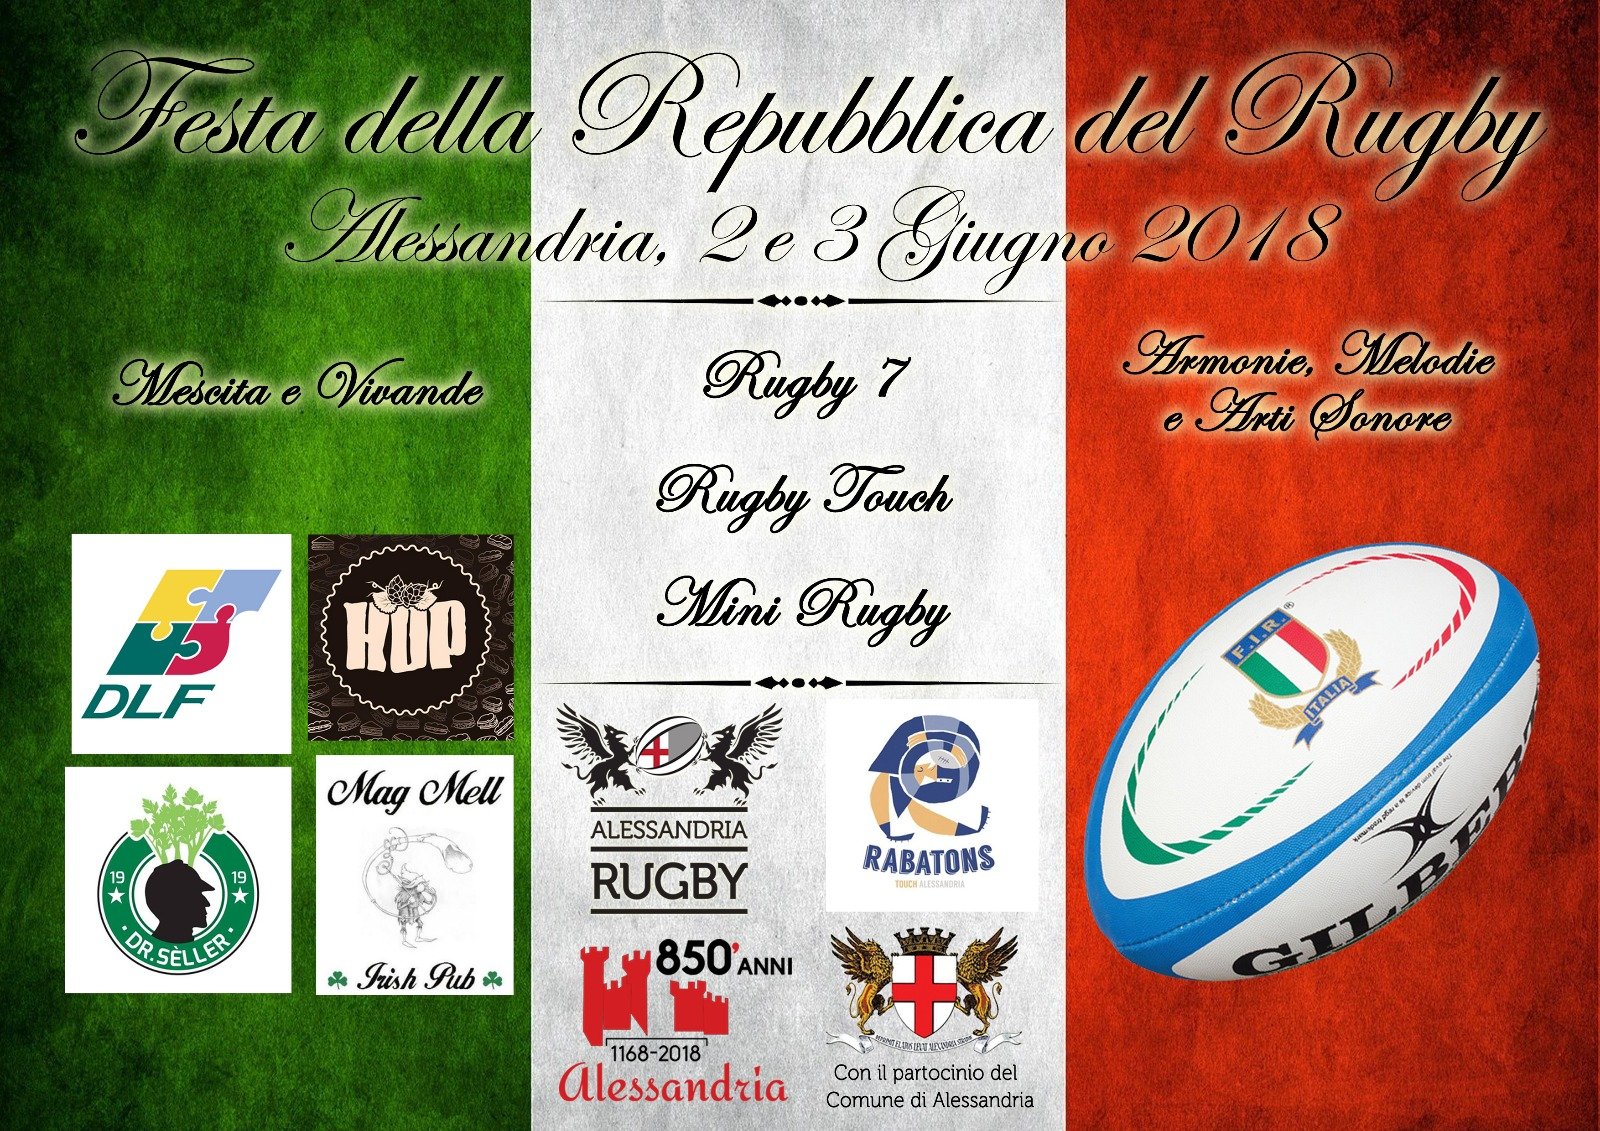 Alessandria Rugby: due giorni di festa tra tornei, musica e buon cibo